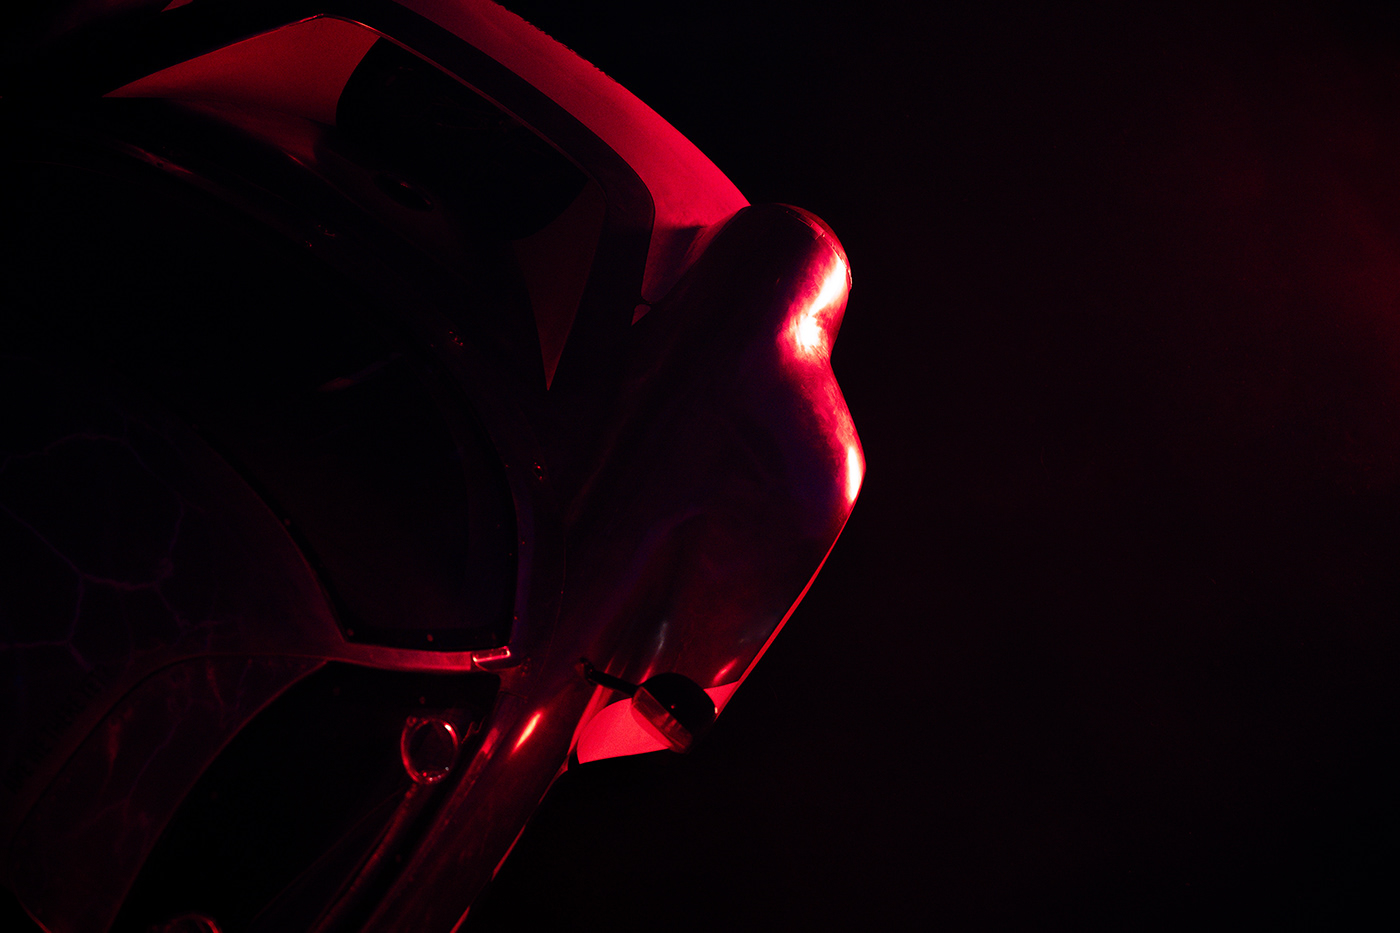 Porsche colors neon Moody dark automotive   cinematic red oilstainlab PORSCHE911